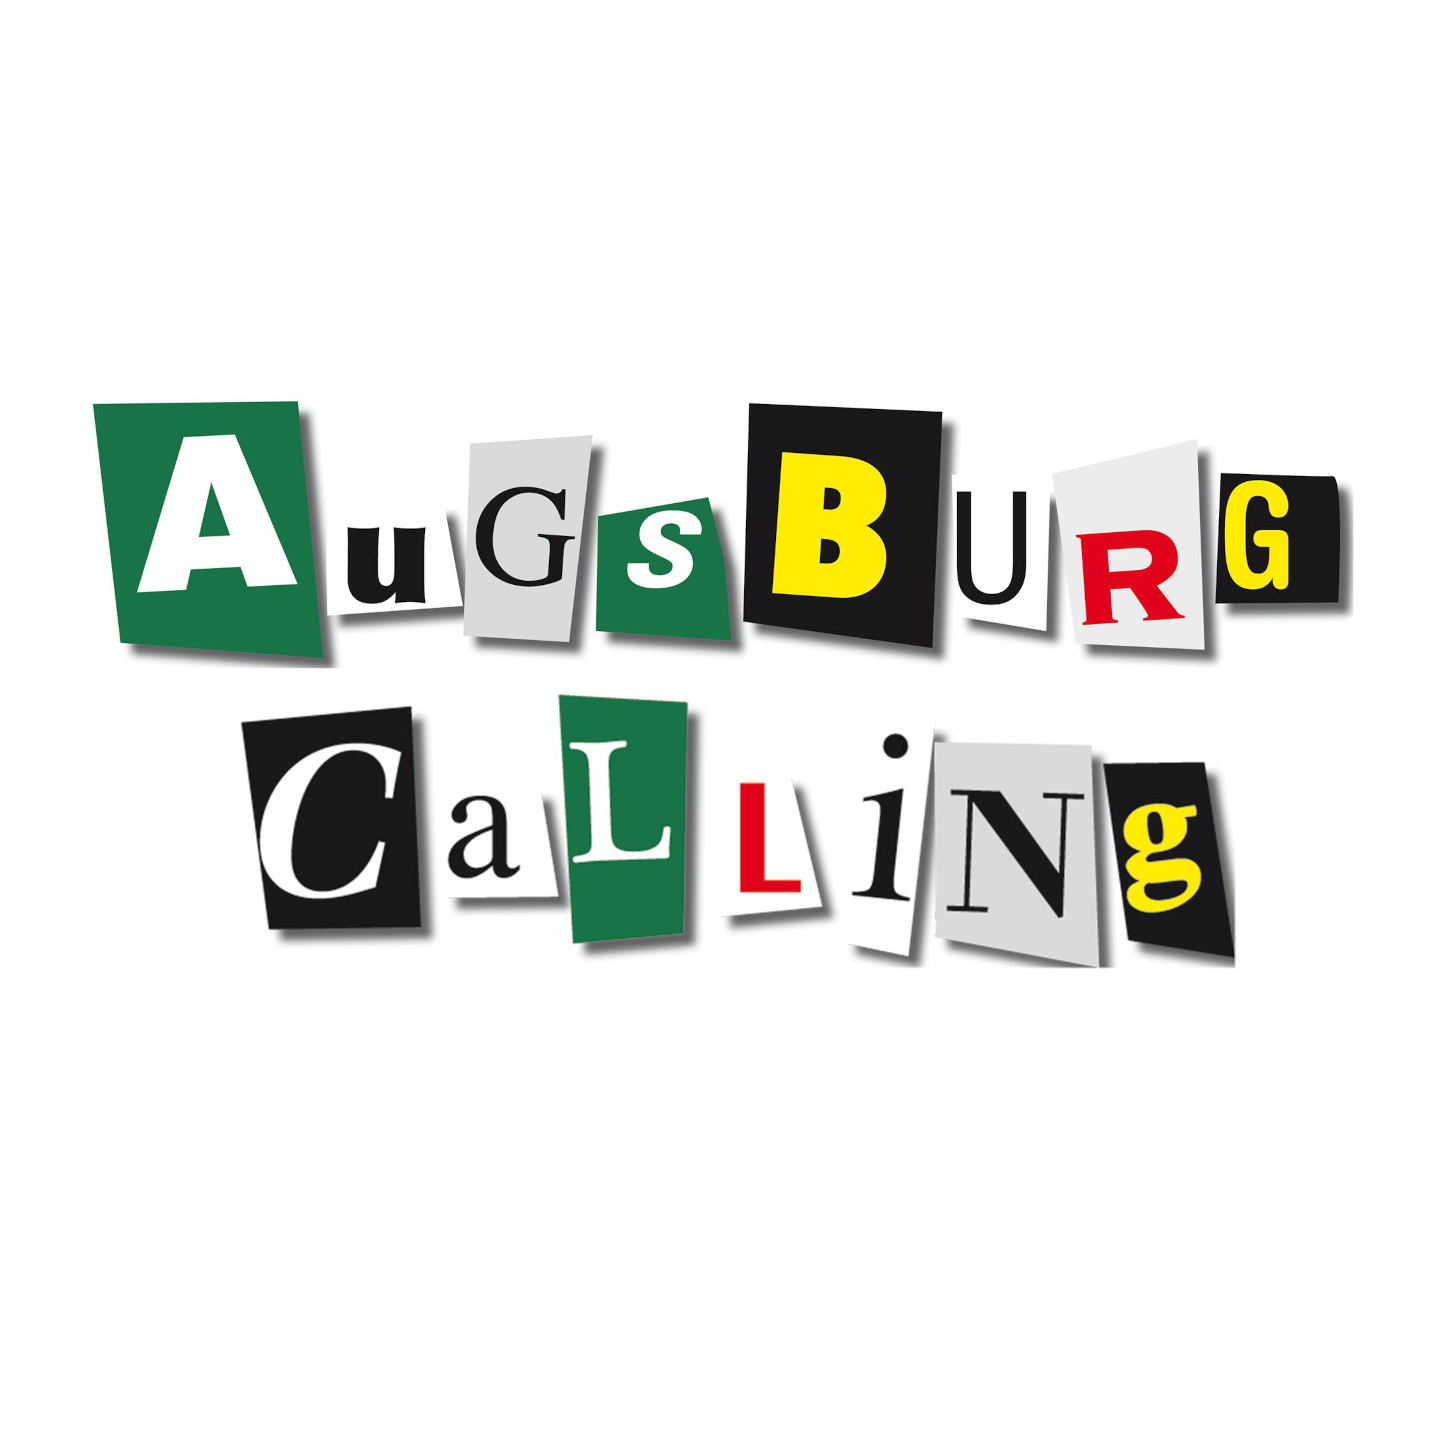 Augsburg Calling. Как панк из Аугсбурга объединил футбольных фанатов